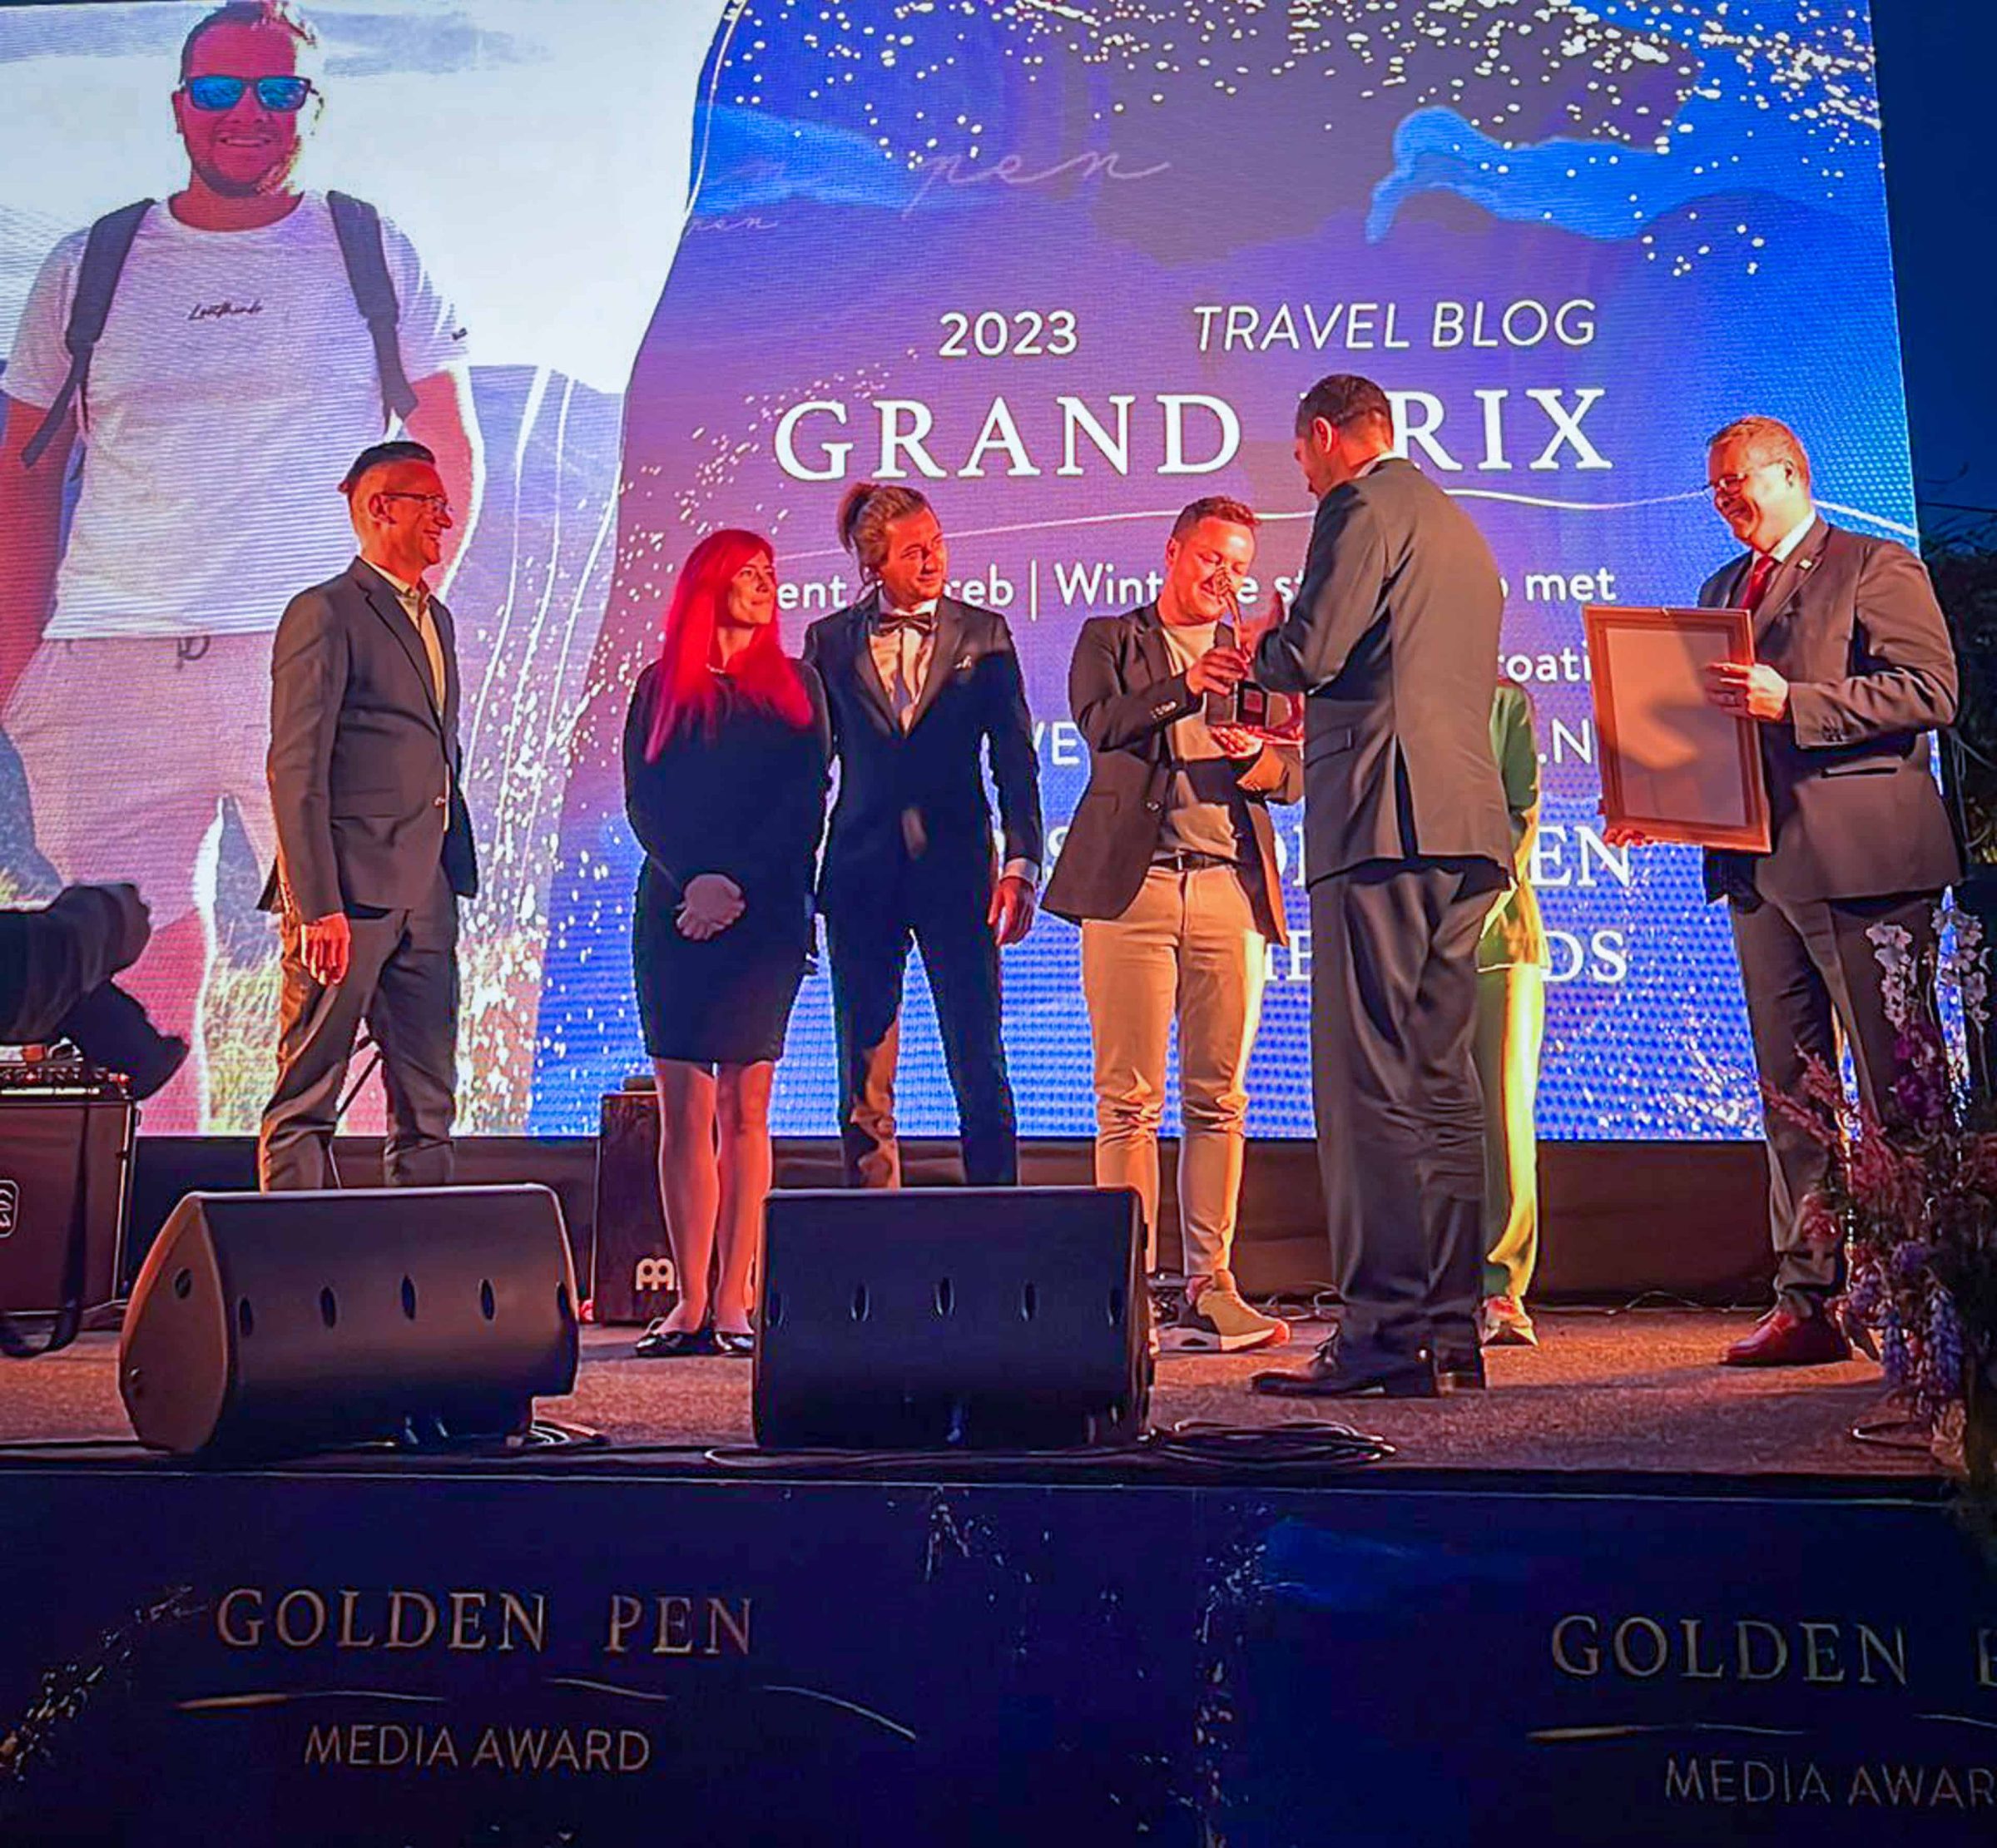 Chris receiving his Golden Pen Media Award | Foto: Pauline Grossen